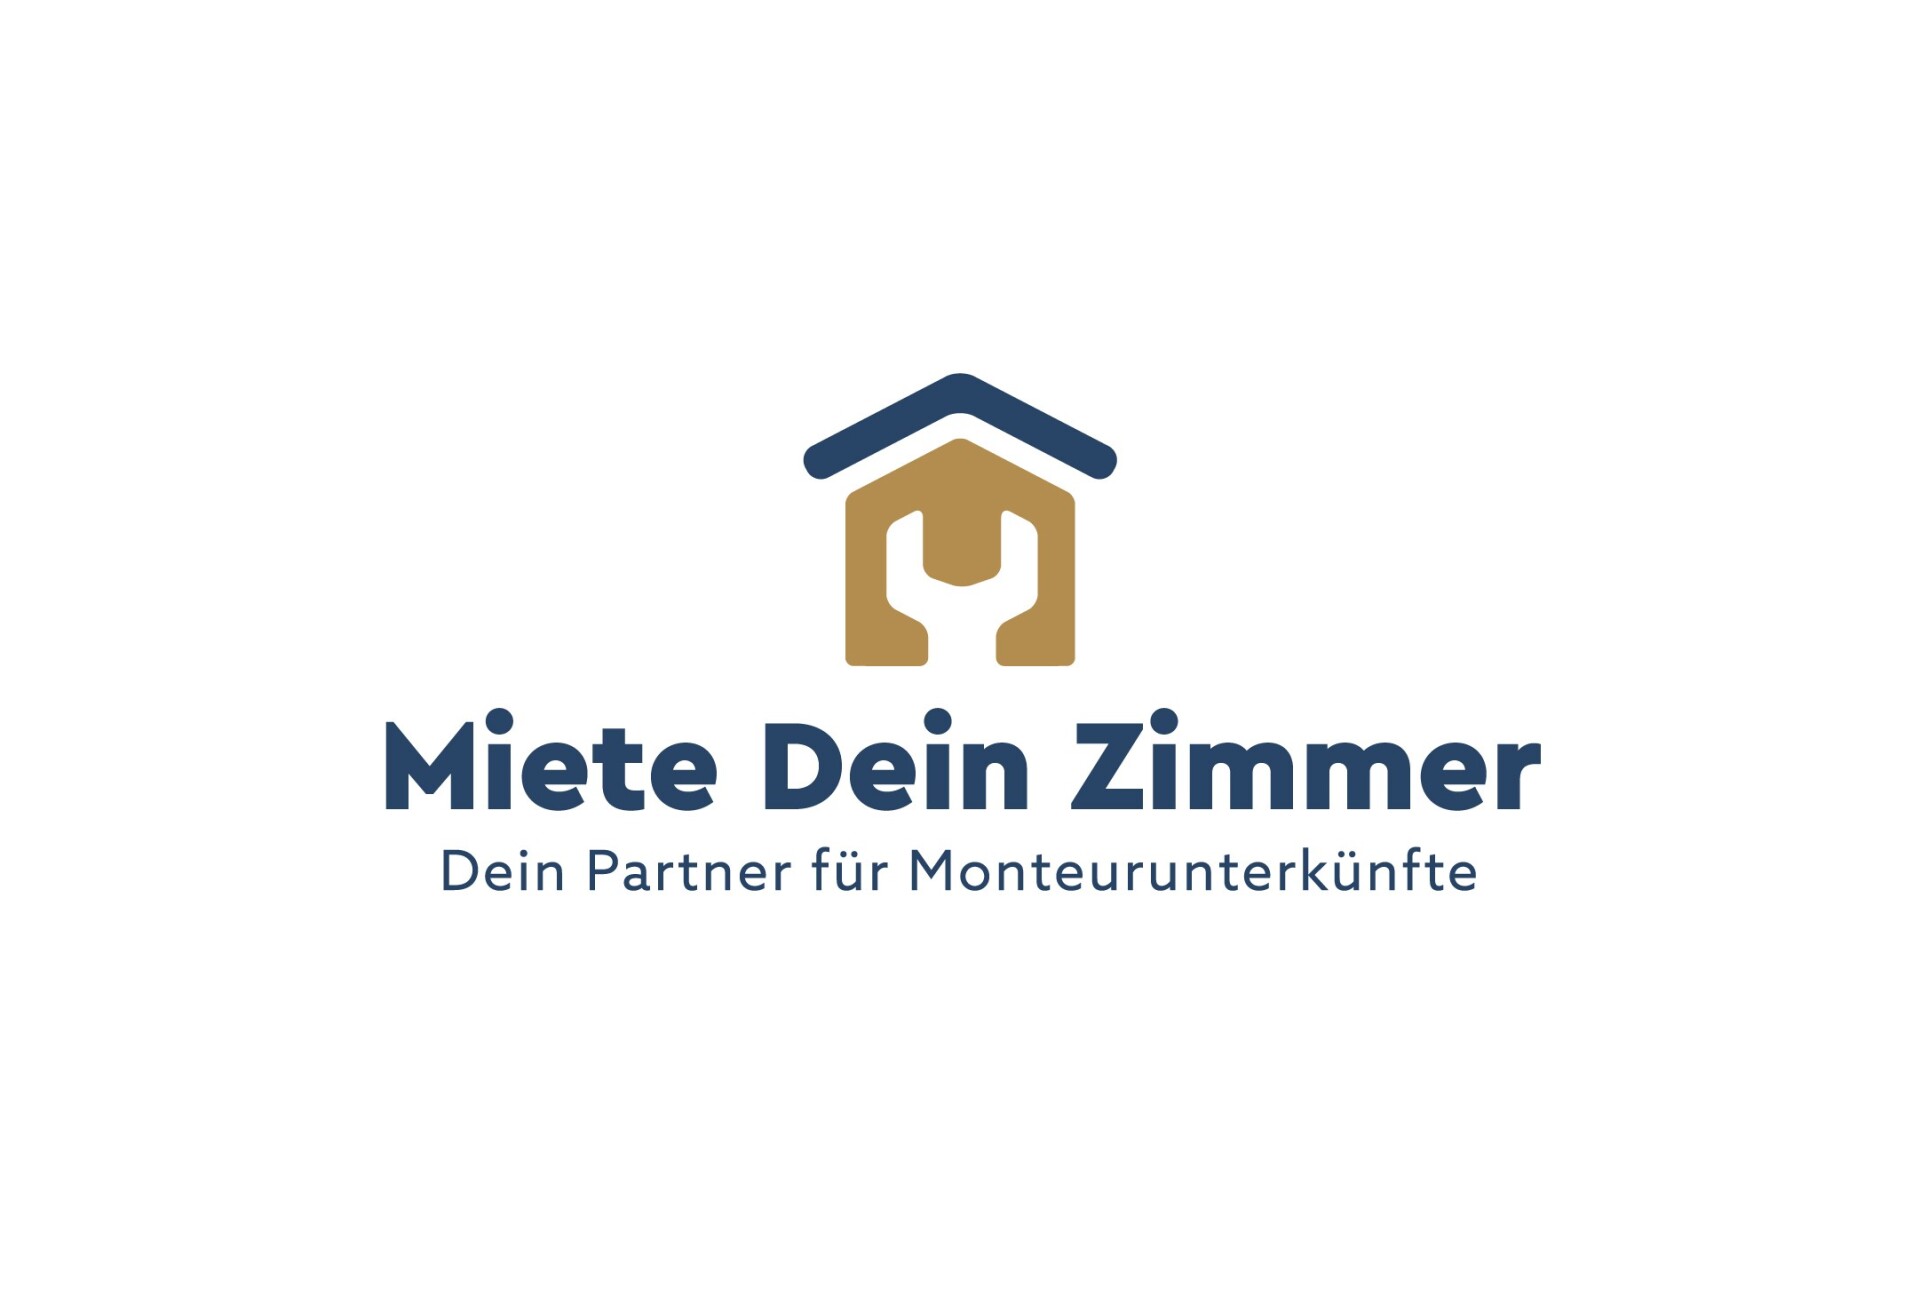 Monteurunterkunft MDZ GmbH bundesweite Vermietung von Unterkünften 49477 Ibbenbüren 1685521232_647703507d5d7